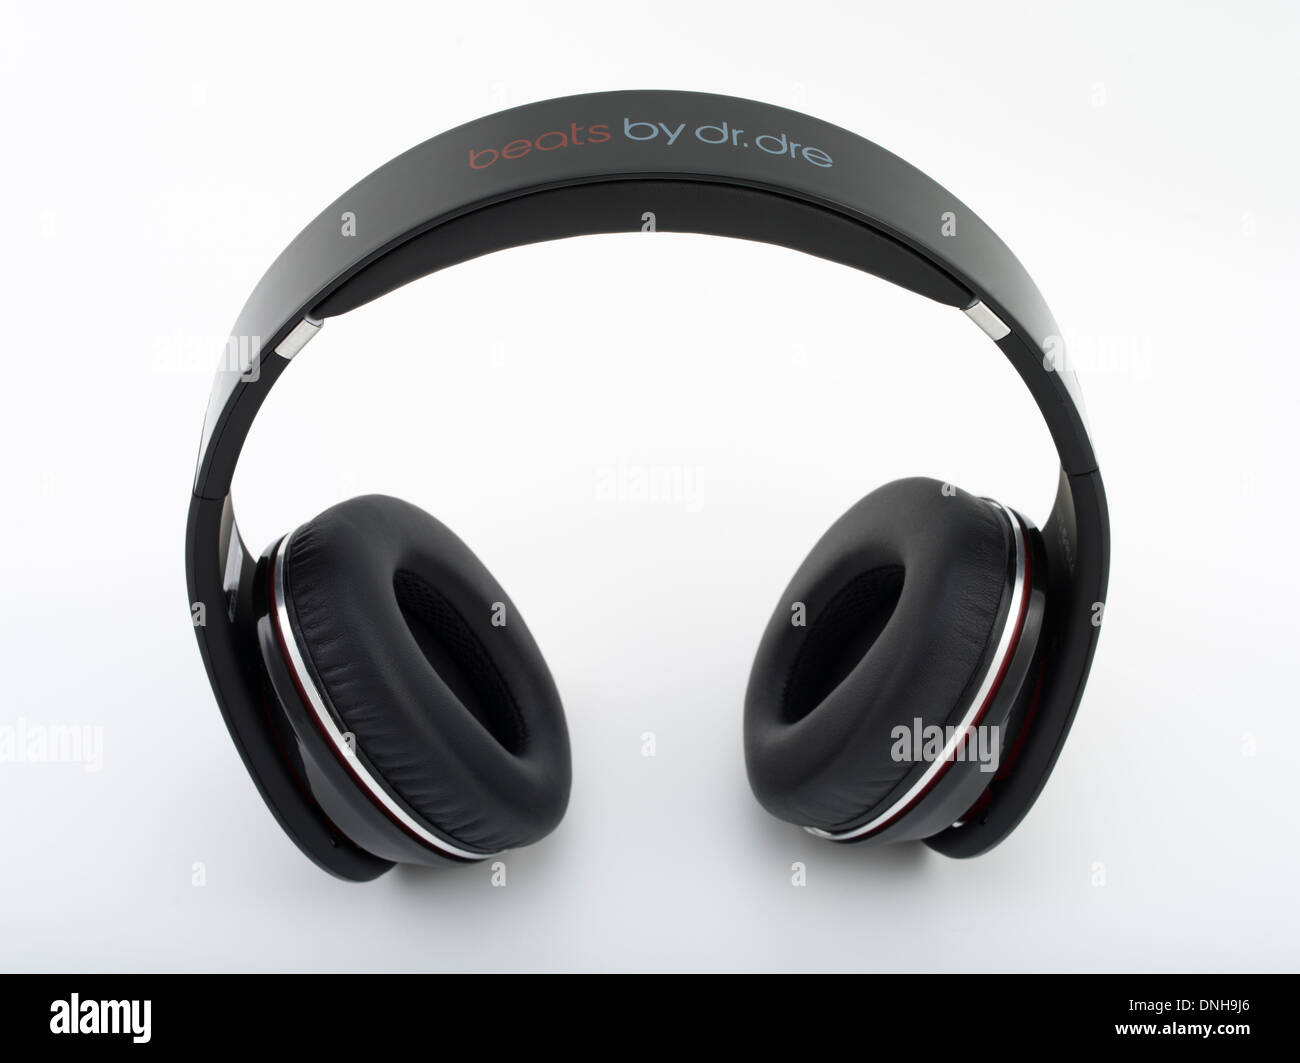 Beats von Dr. Dre Studio-Kopfhörer von Monster Cable produziert 2008. Kultige Gadget / audio Geräte. Stockfoto